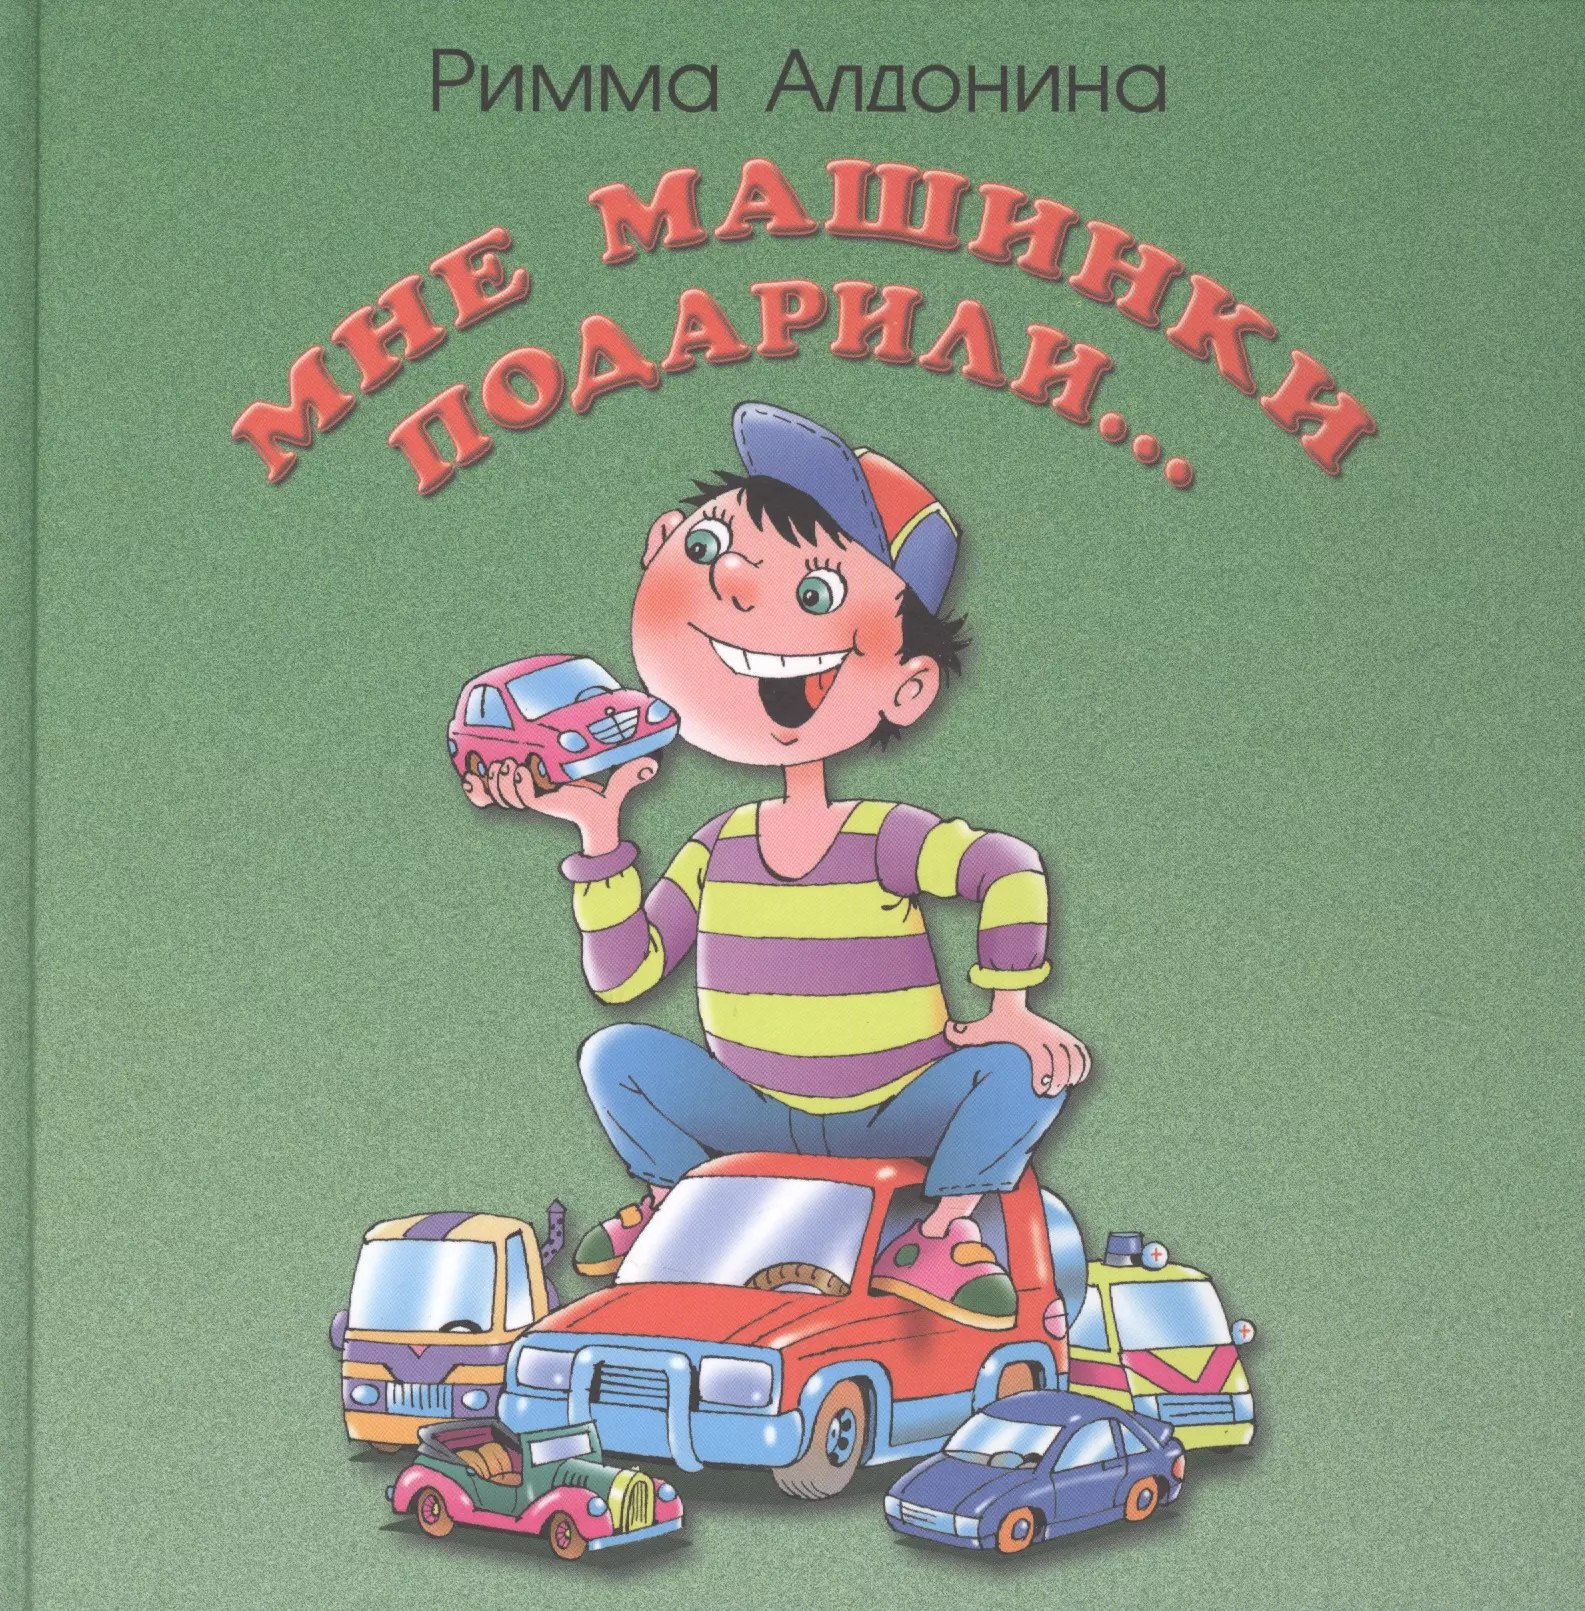 Алдонина Римма Петровна Мне машинки подарили: стихи для детей добрые стихи малышам